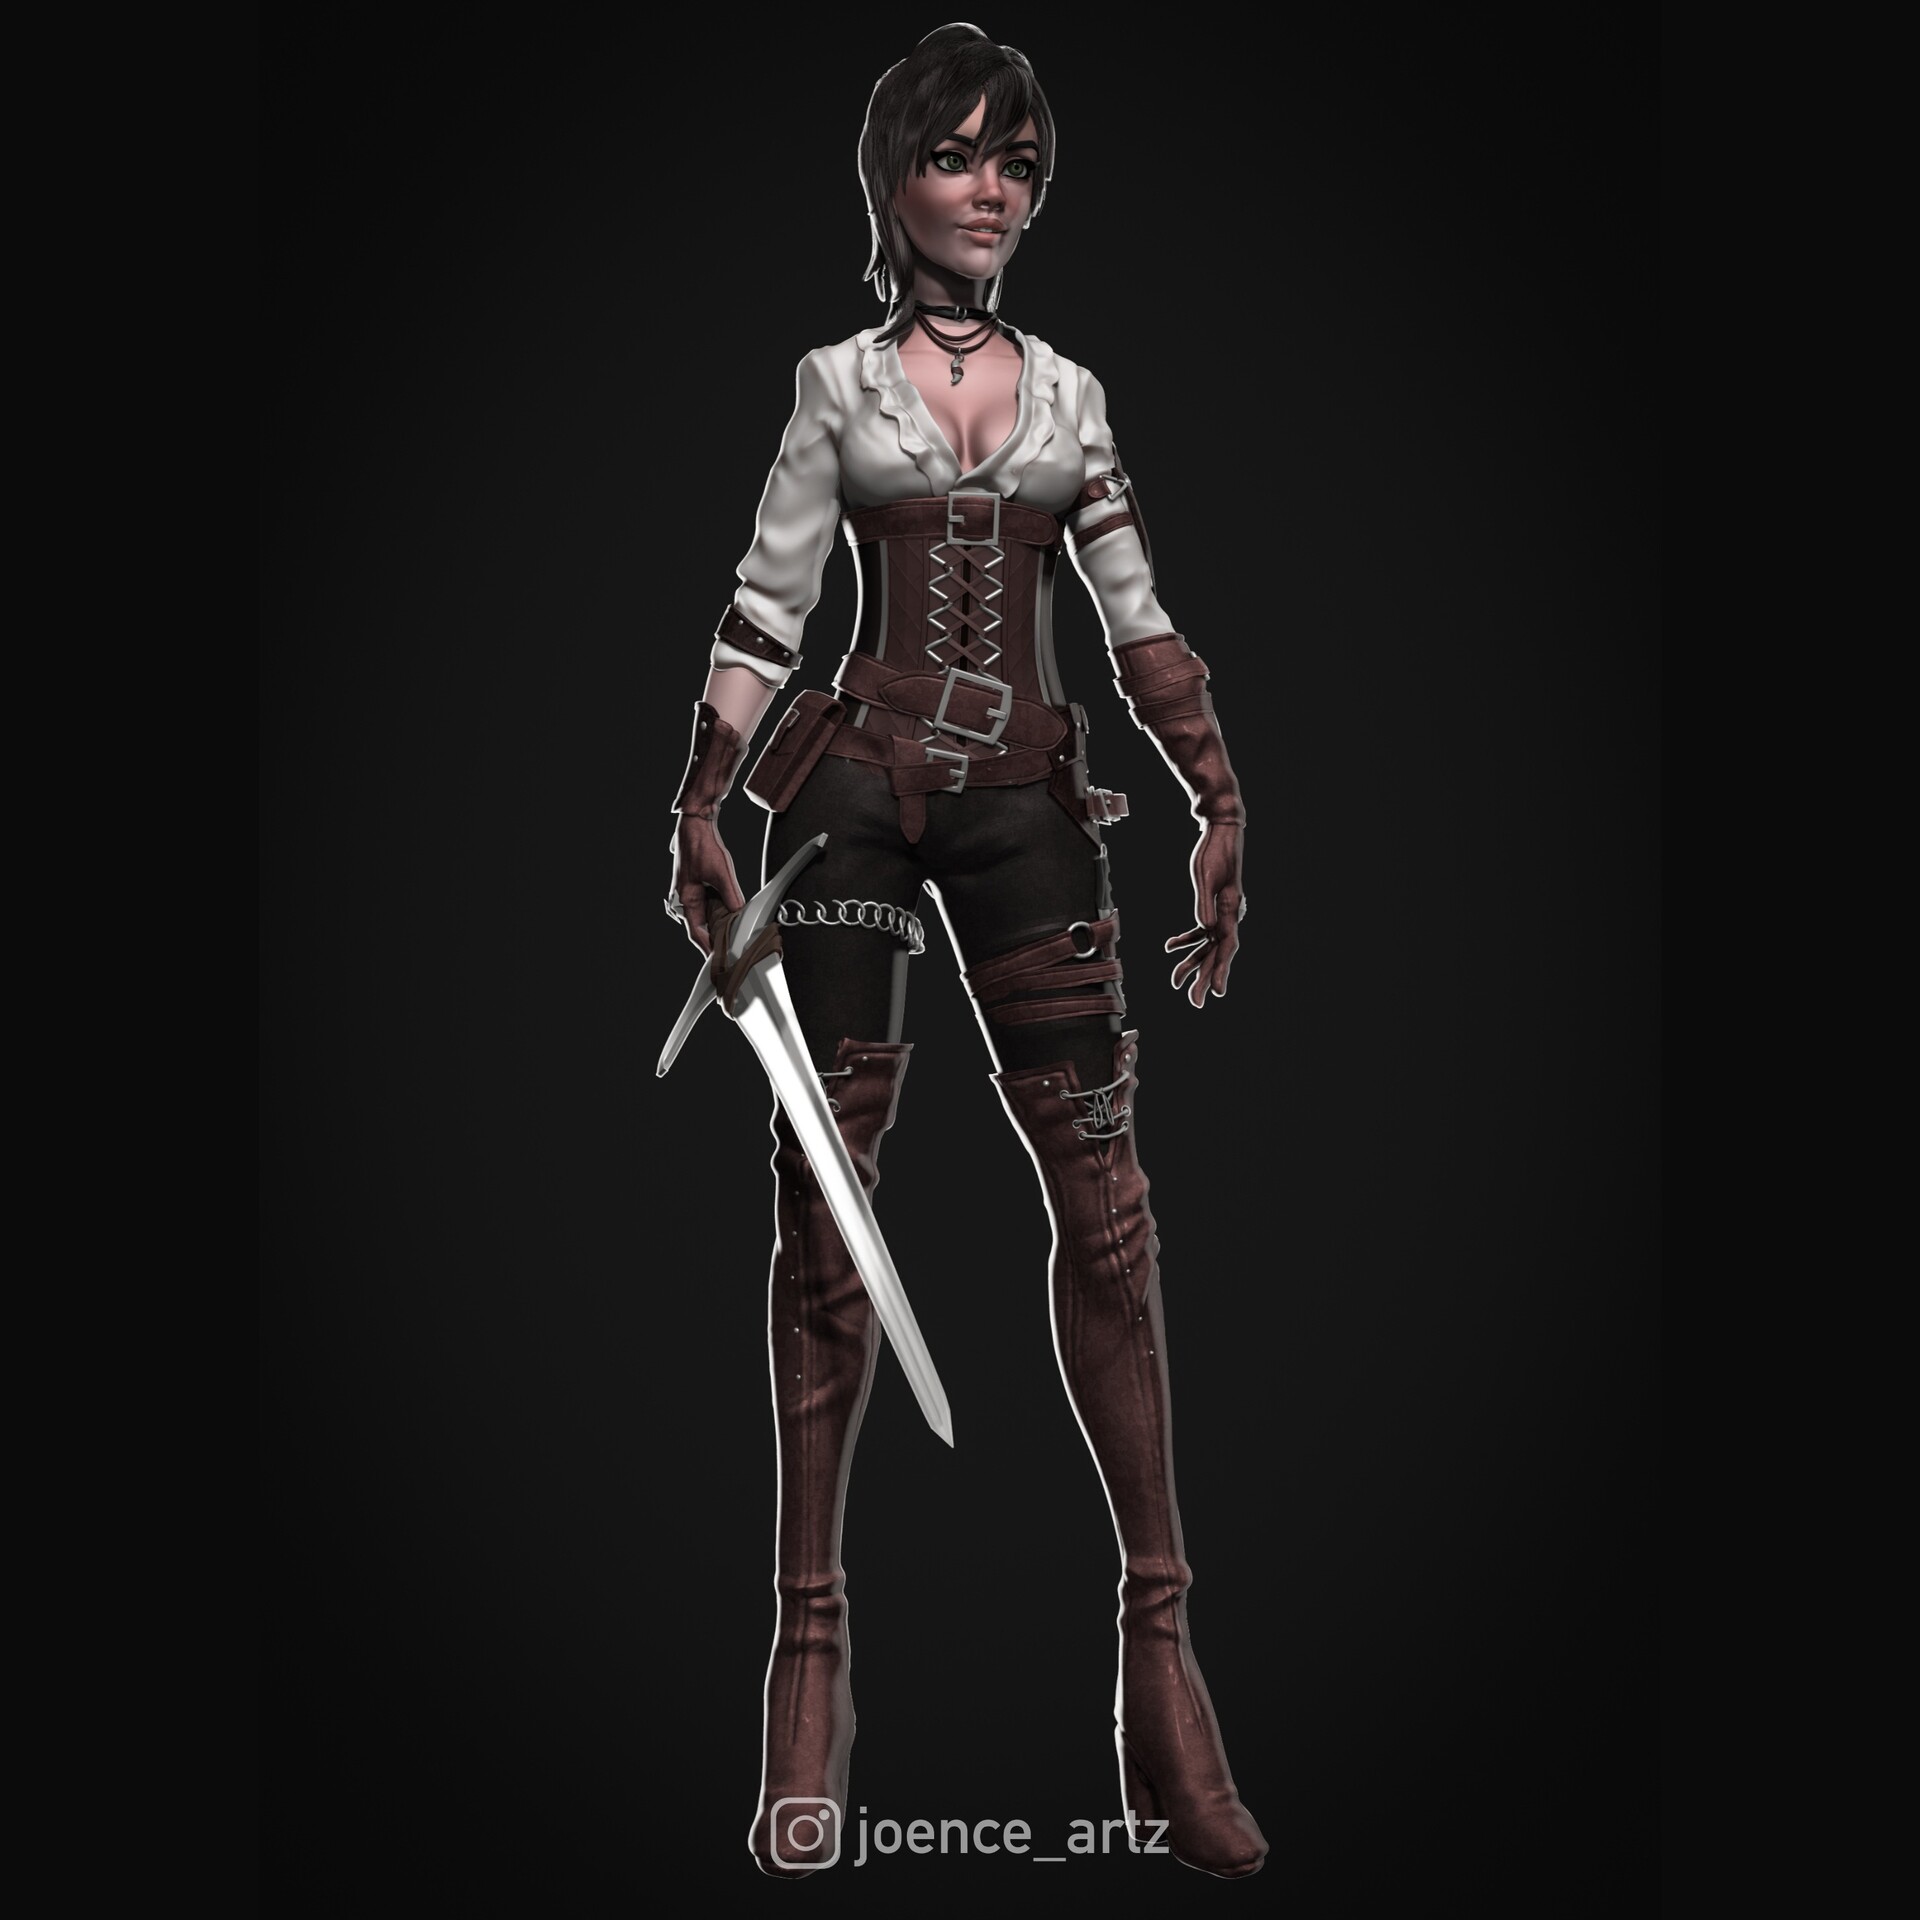 ArtStation - Female Assassin